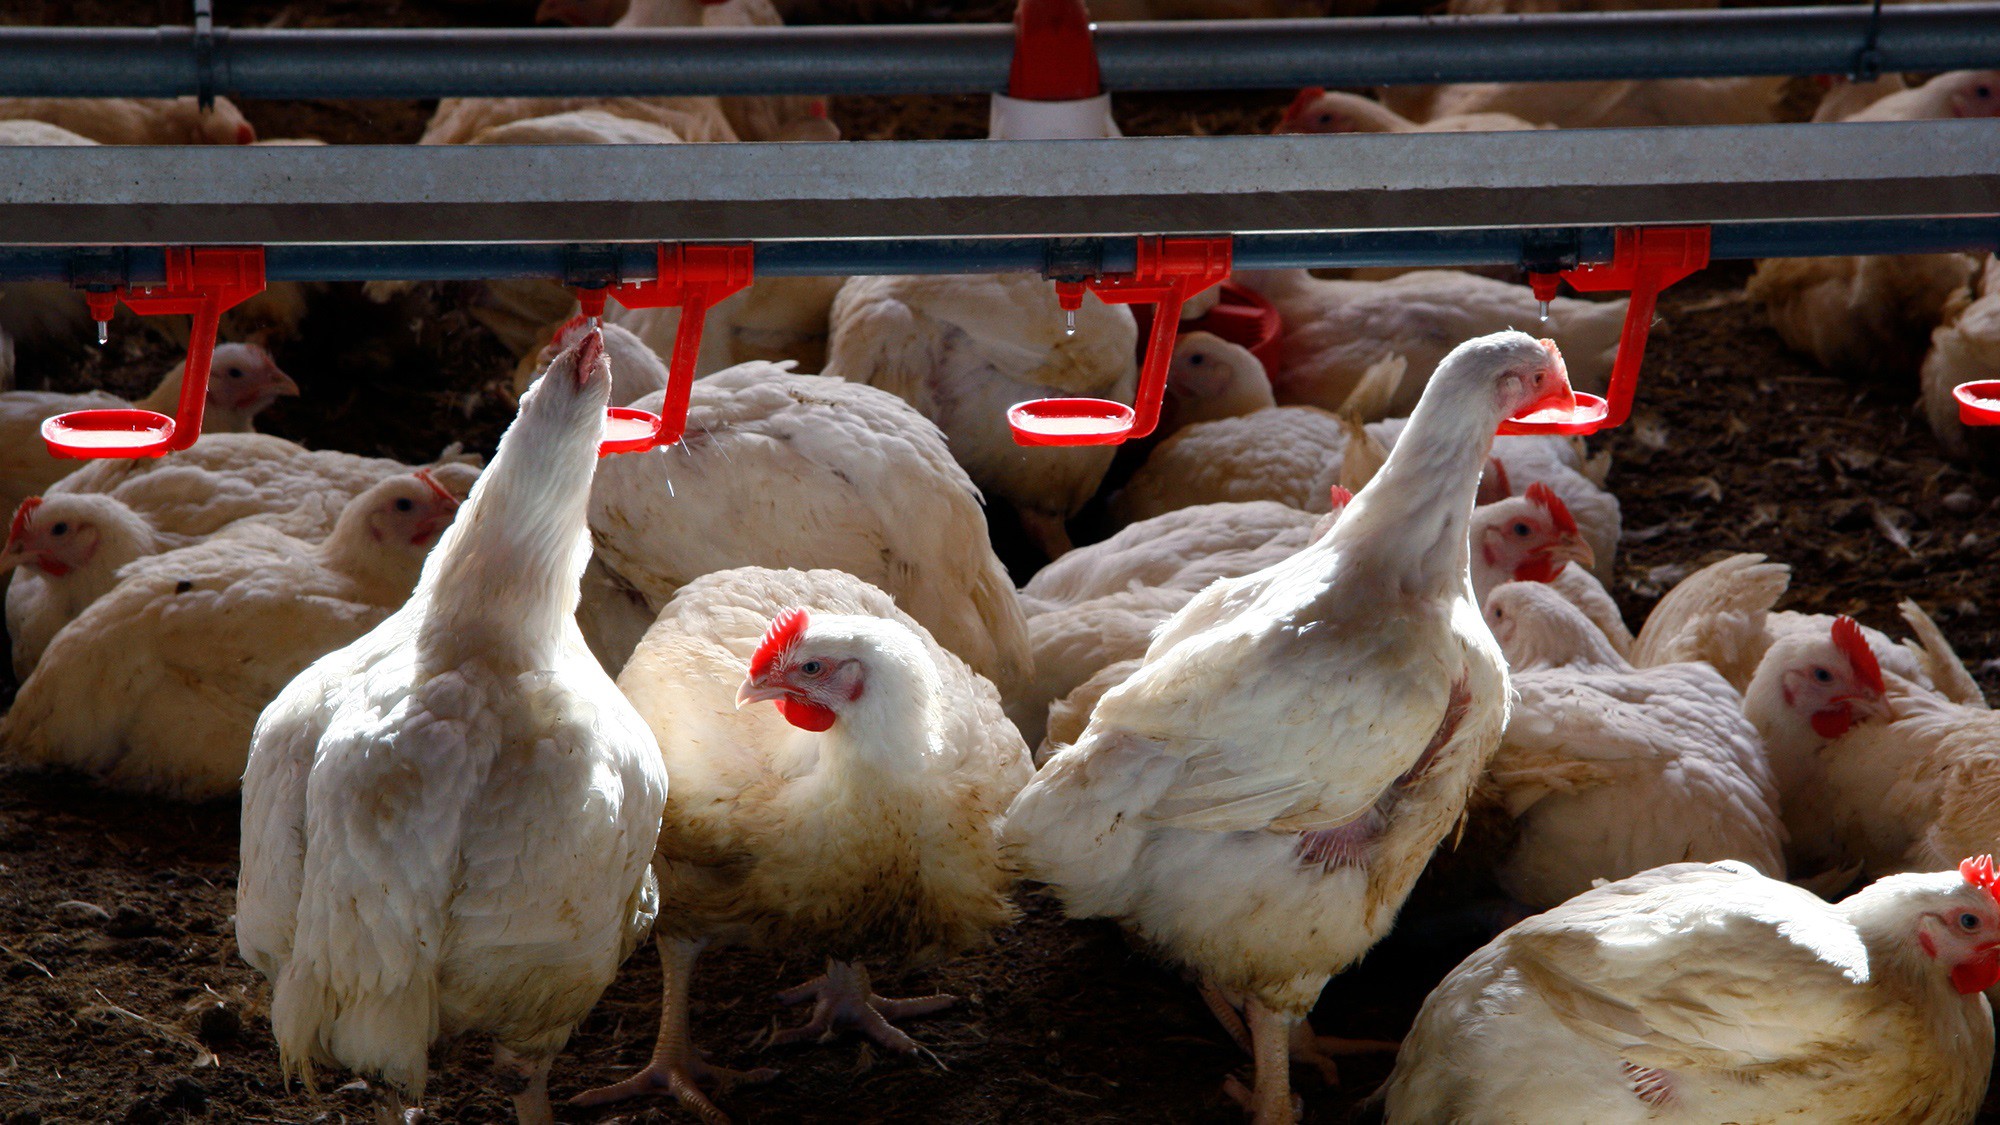 Detectado en Guadalajara caso gripe aviar en humanos